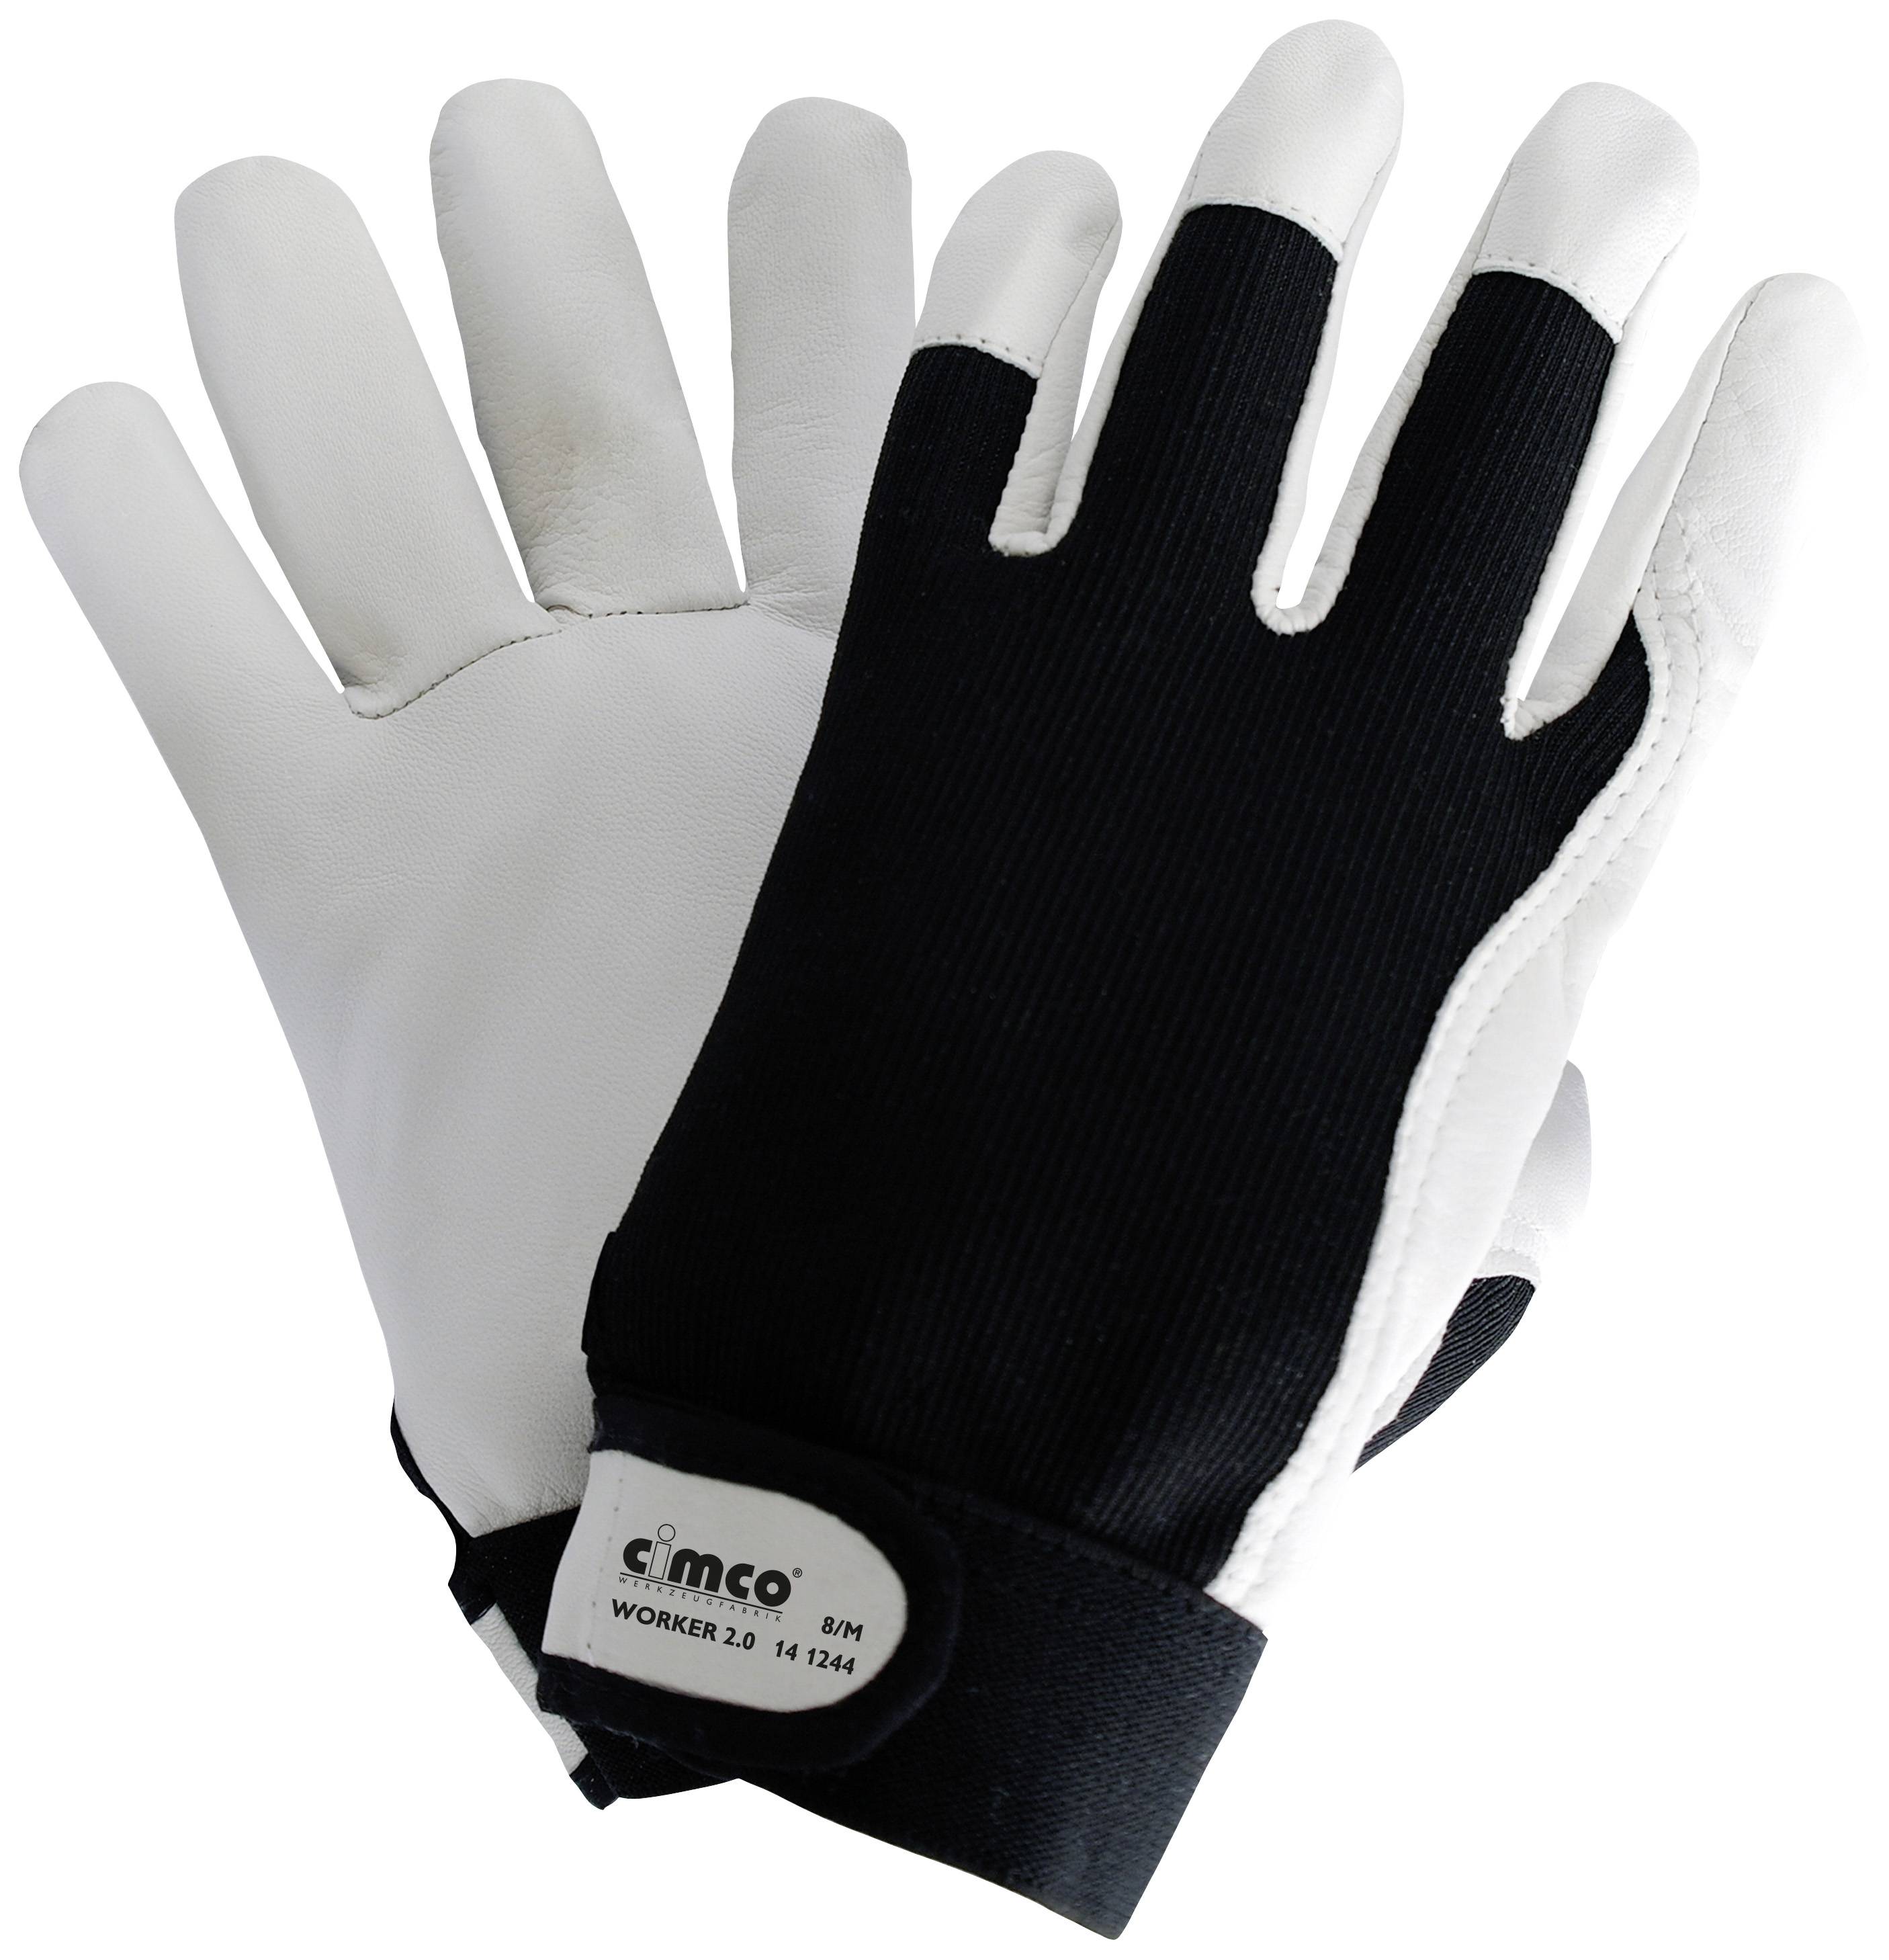 Cimco Worker 2.0 schwarz/weiß 141247 Nappaleder Arbeitshandschuh Größe (Handschuhe): 11, XXL EN 388